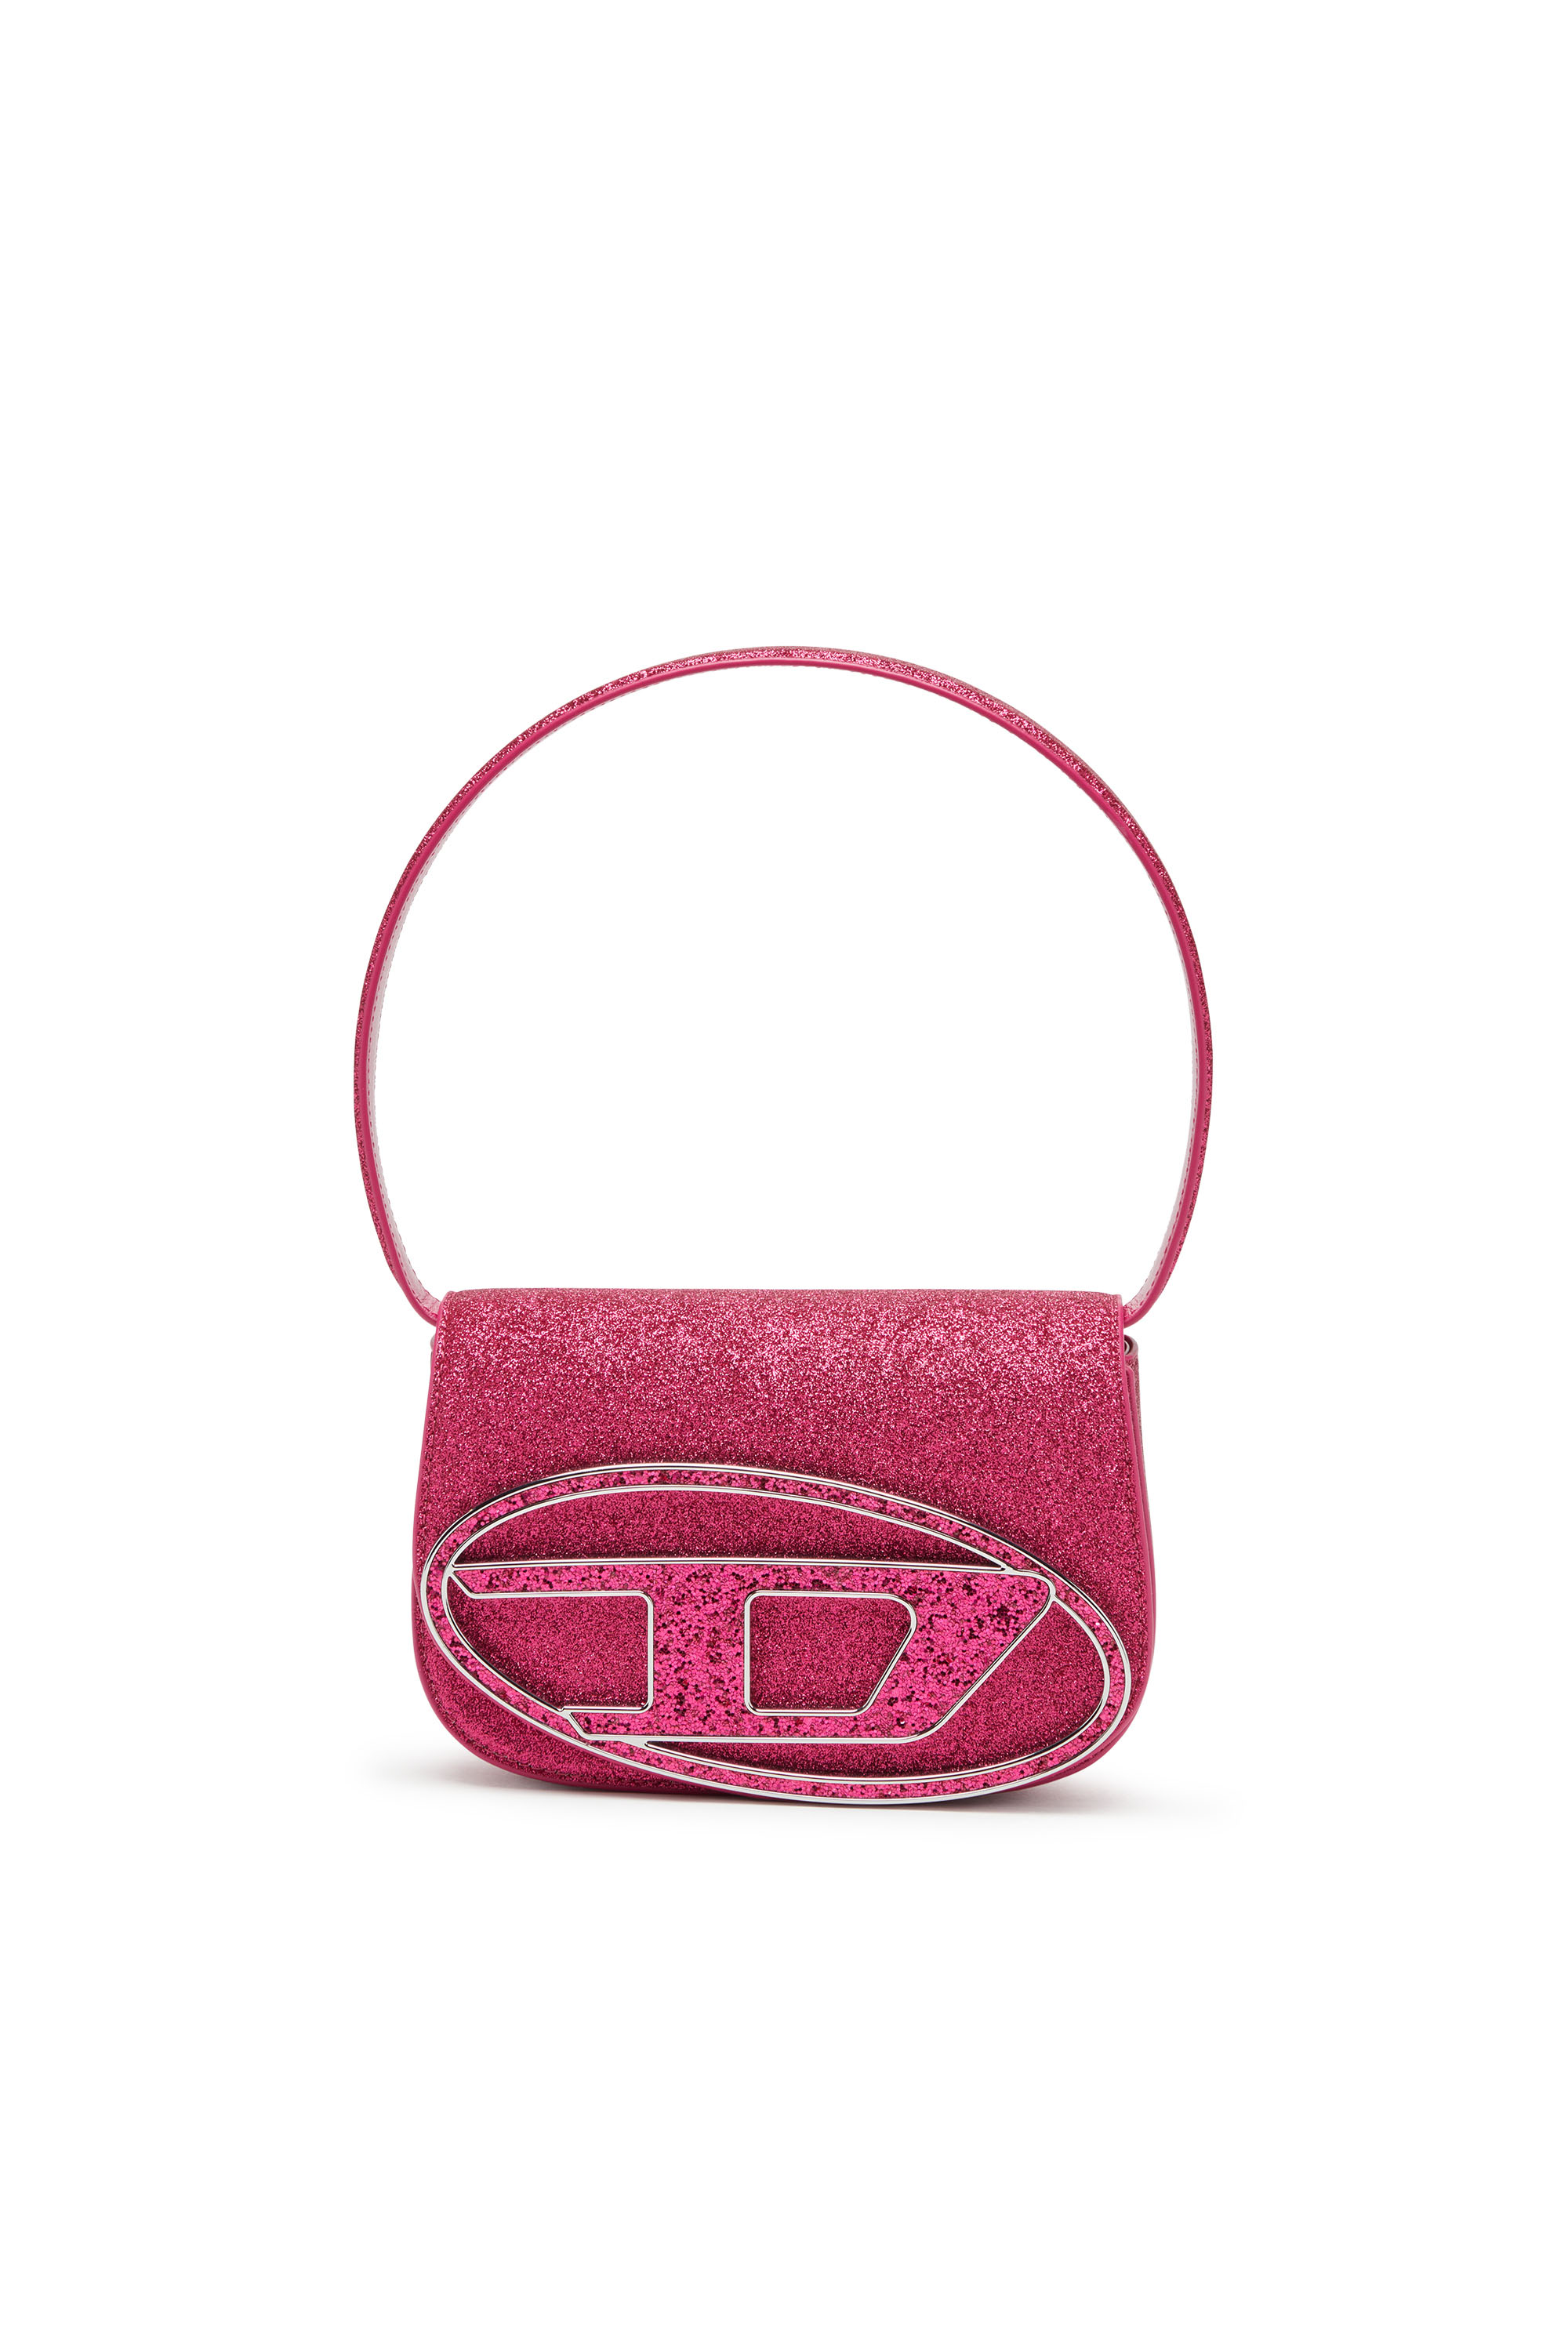 Diesel - 1DR Shoulder Bag - Iconic shoulder bag in glitter fabric - Shoulder Bags - Woman - Pink